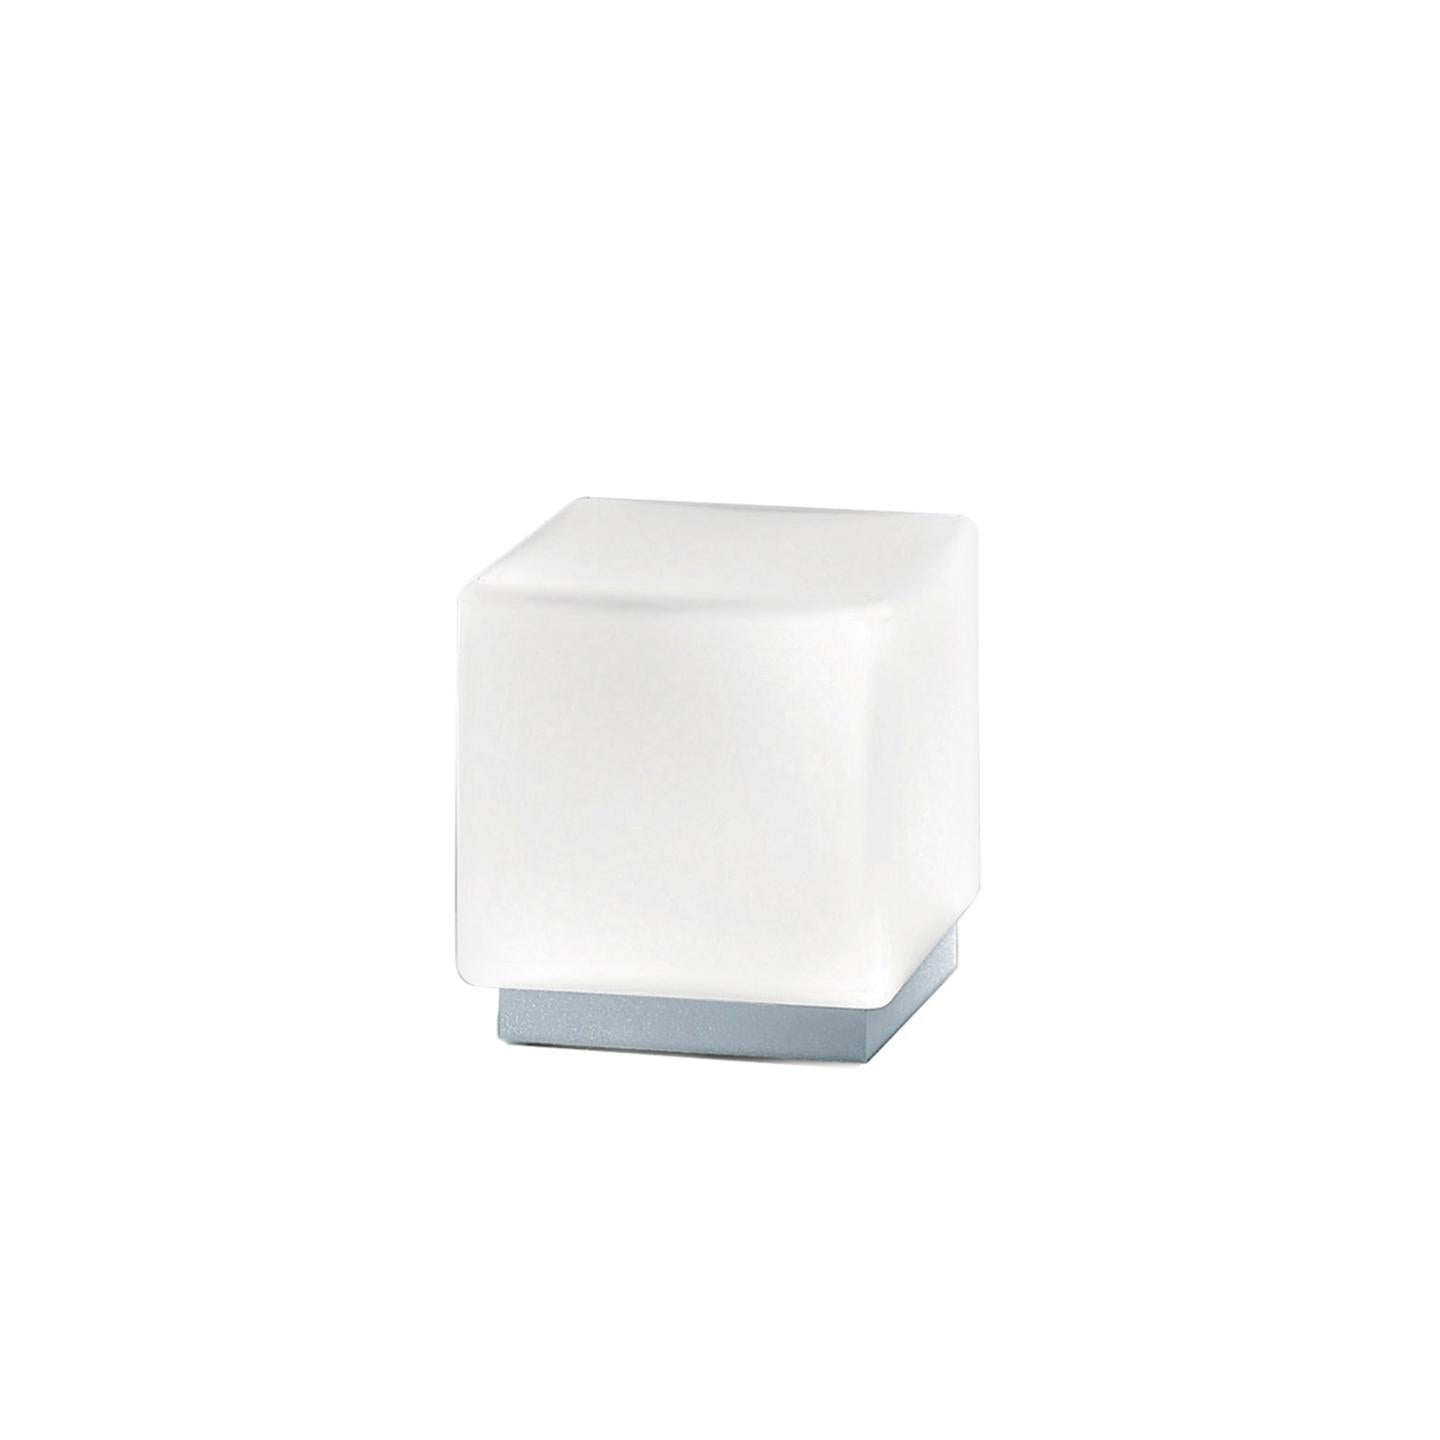 La lampe de table Cubi, conçue en 2000, est une icône de Leucos. Sa forme cubique est surprenante pour du verre fait main, ce qui en fait une lampe ravissante. Son diffuseur blanc satiné soufflé à la main est composé de plusieurs couches de verre